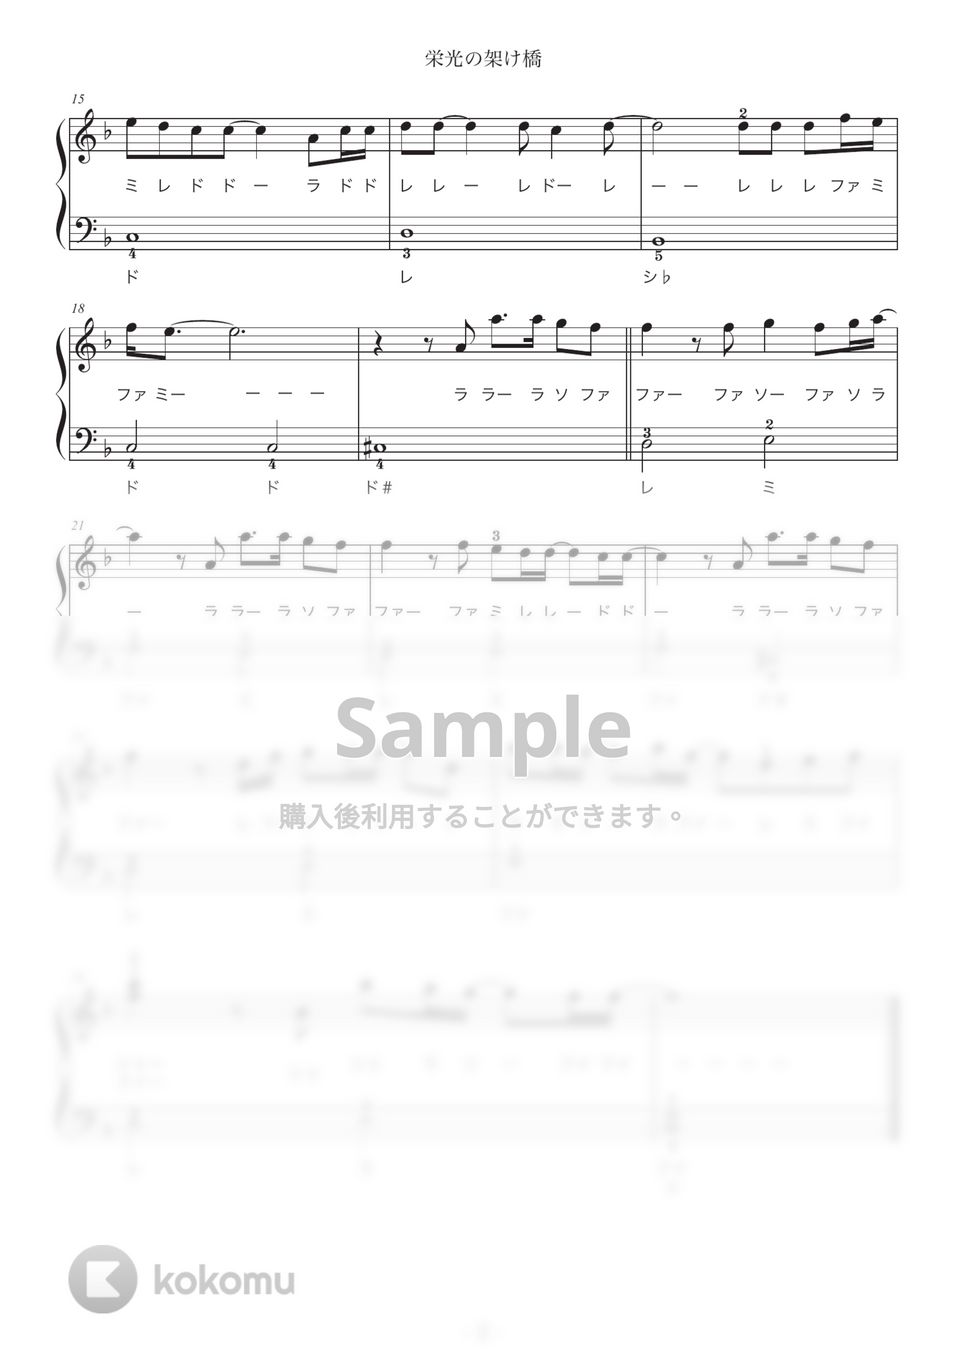 ゆず - 栄光の架け橋 (ピアノ入門/音符ふりがな付) by OKANA